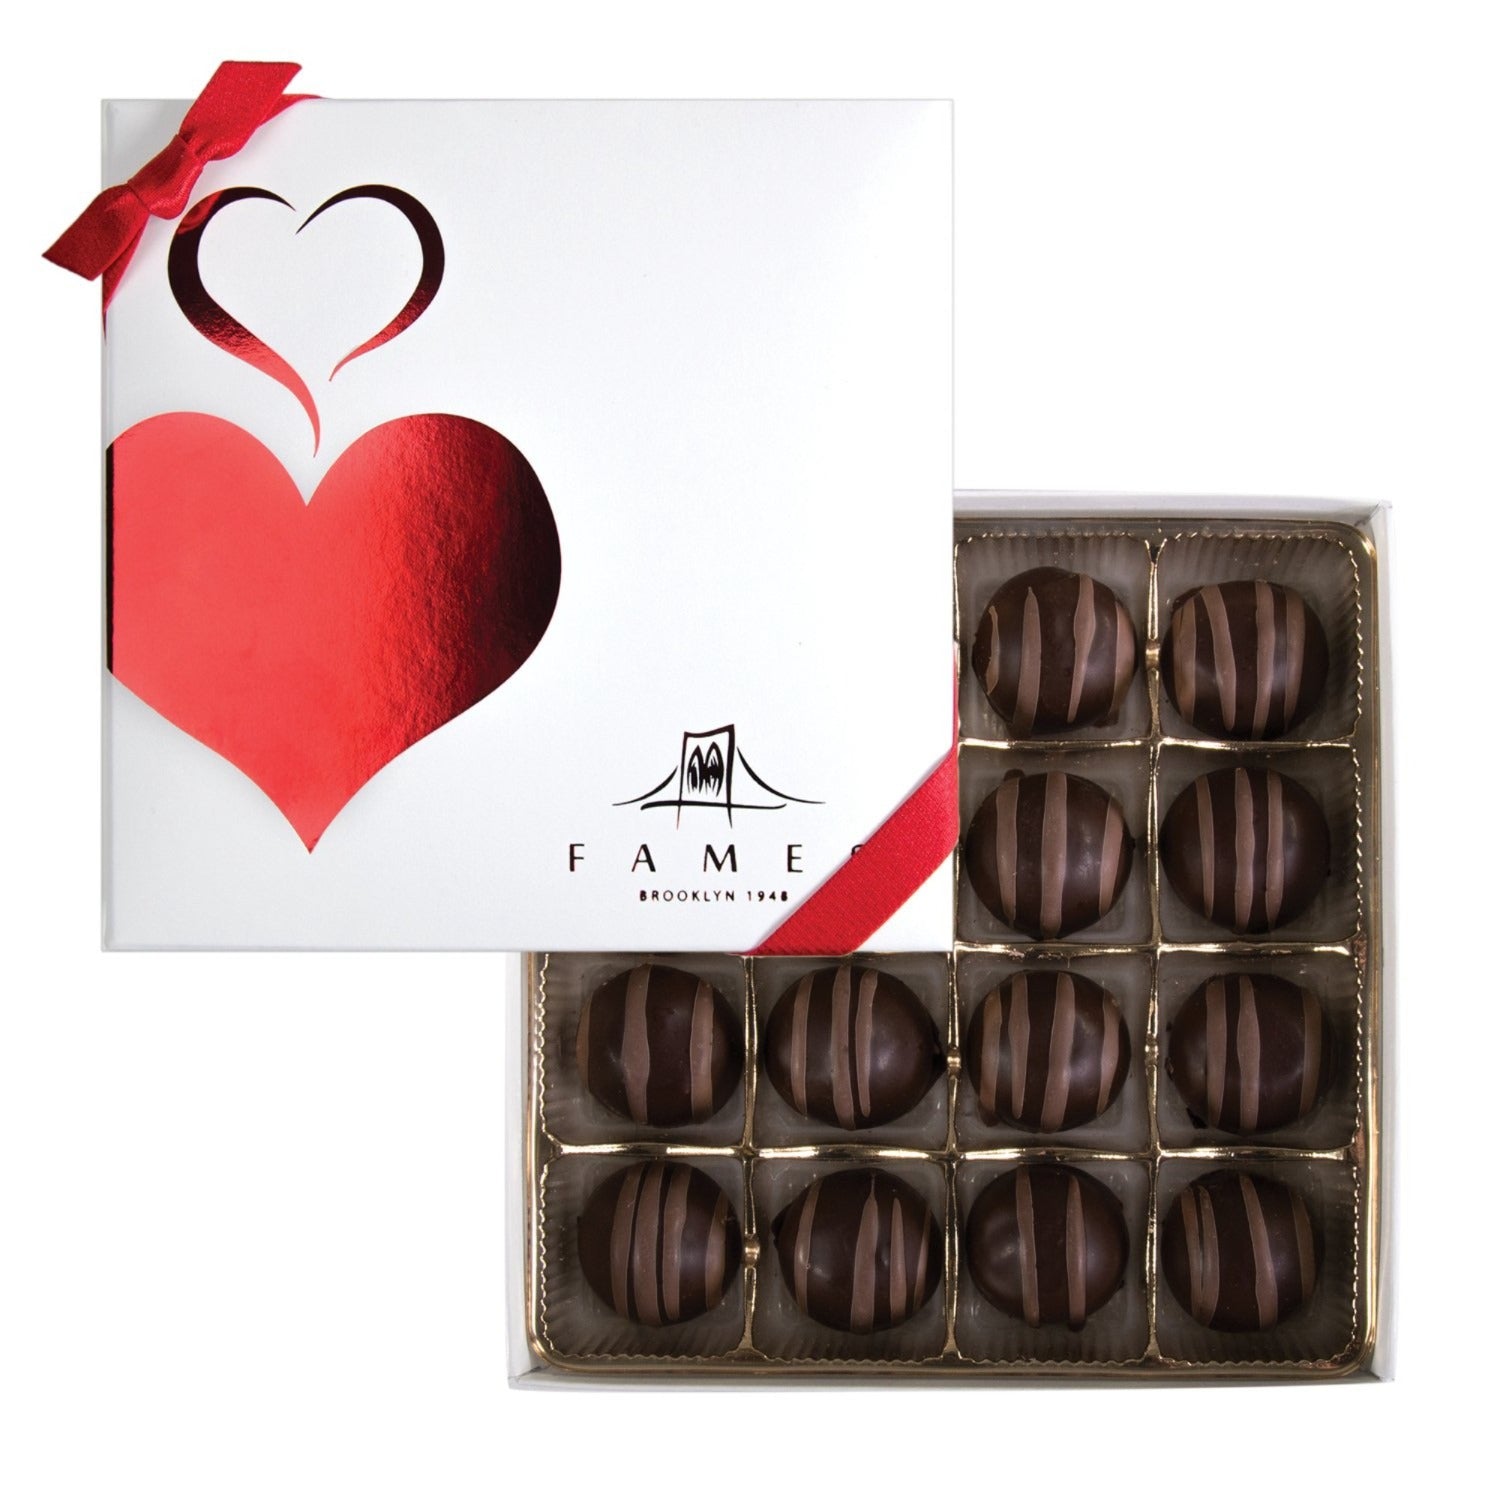 Gourmet Chocolate Truffles Gift Box - 16 count, Kosher, Dairy Free.  Fames Chocolate   